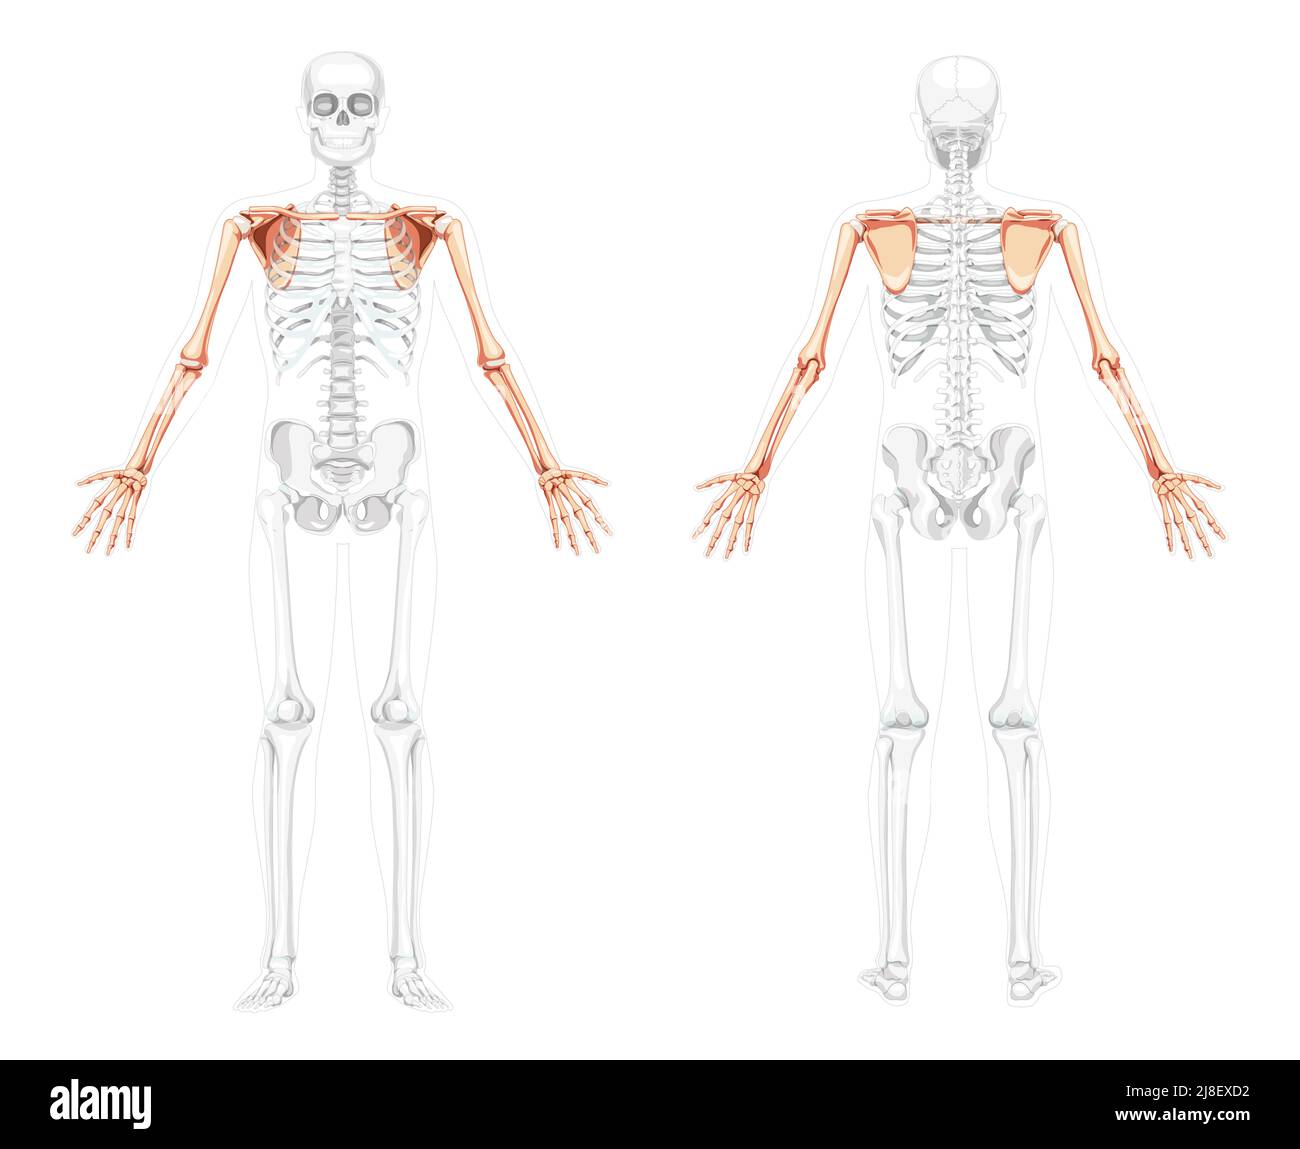 Skelett obere Extremität Arme mit Schultergurt menschliche Vorderansicht mit zwei Armhaltungen mit teilweise transparenter Knochenposition. Hände realistisch flach Vektor-Illustration der Anatomie isoliert auf weiß Stock Vektor